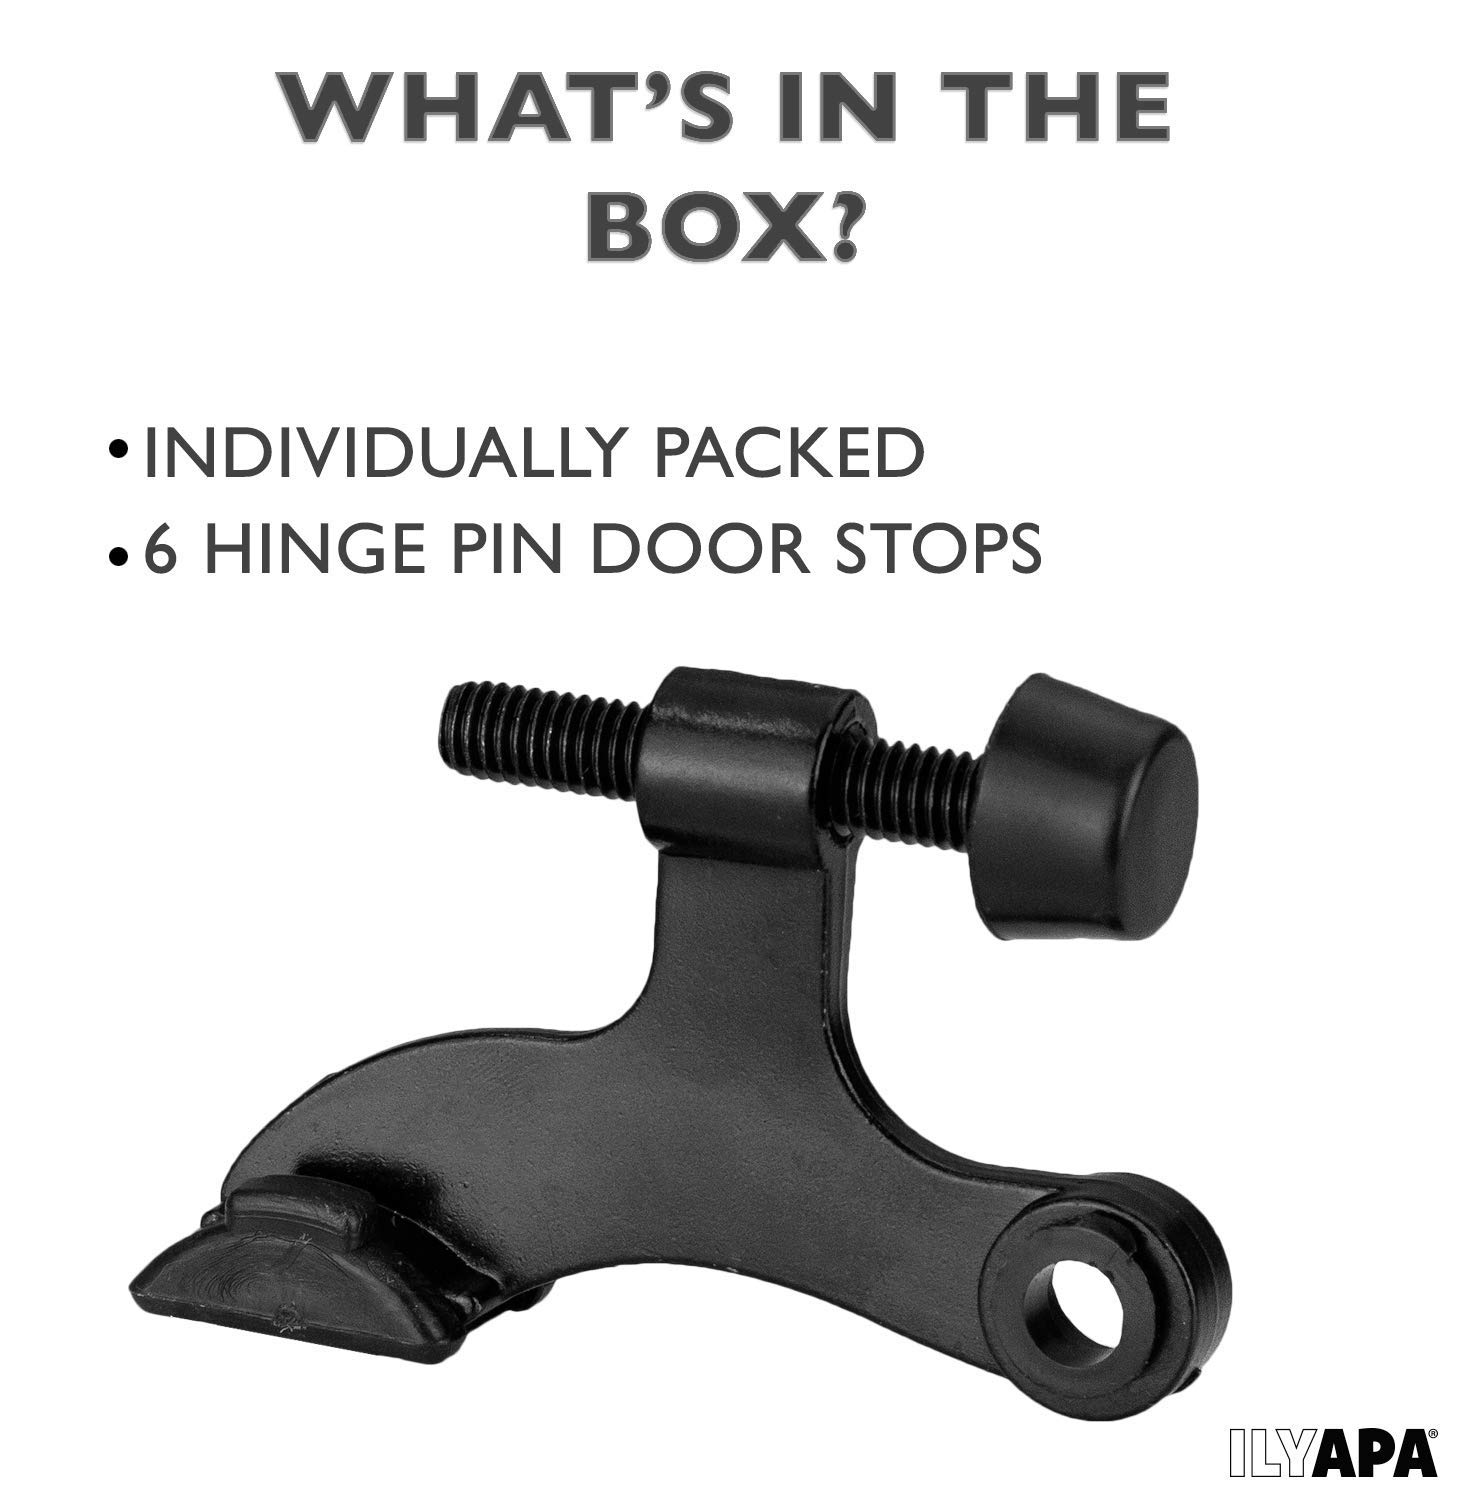 Ilyapa 6 Pack Matte Black Hinge Pin Door Stops - Heavy Duty Adjustable Stopper 2-1/2" x 1-3/4”, Door Stopper Wall Protector with Black Rubber Bumper Tips, Hinge Door Stop, Hinge Pin Door Stop 6 Pack